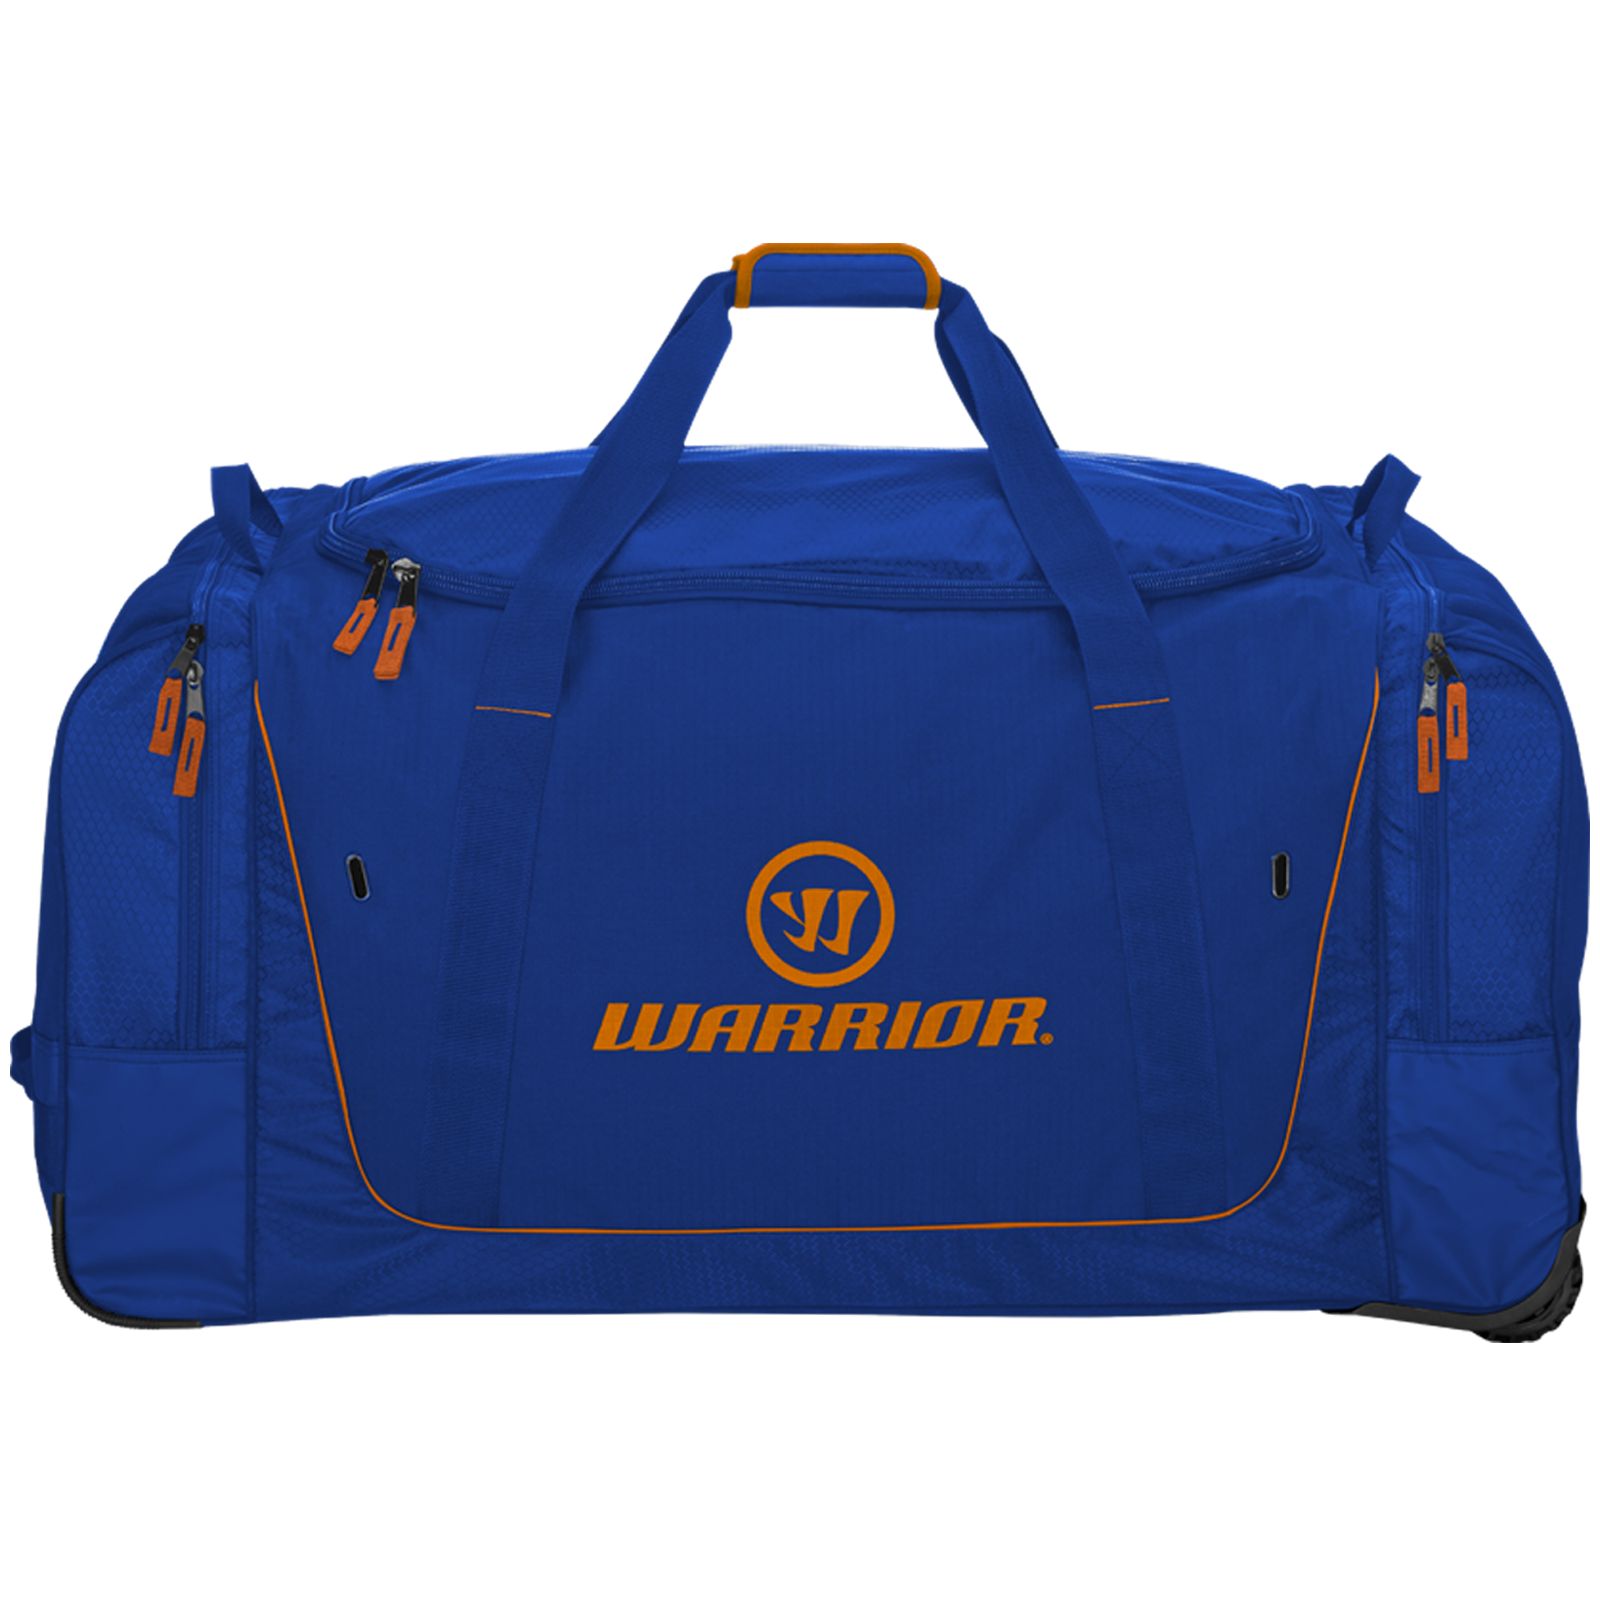 Q20 Cargo Roller Bag, Navy with Orange image number 0